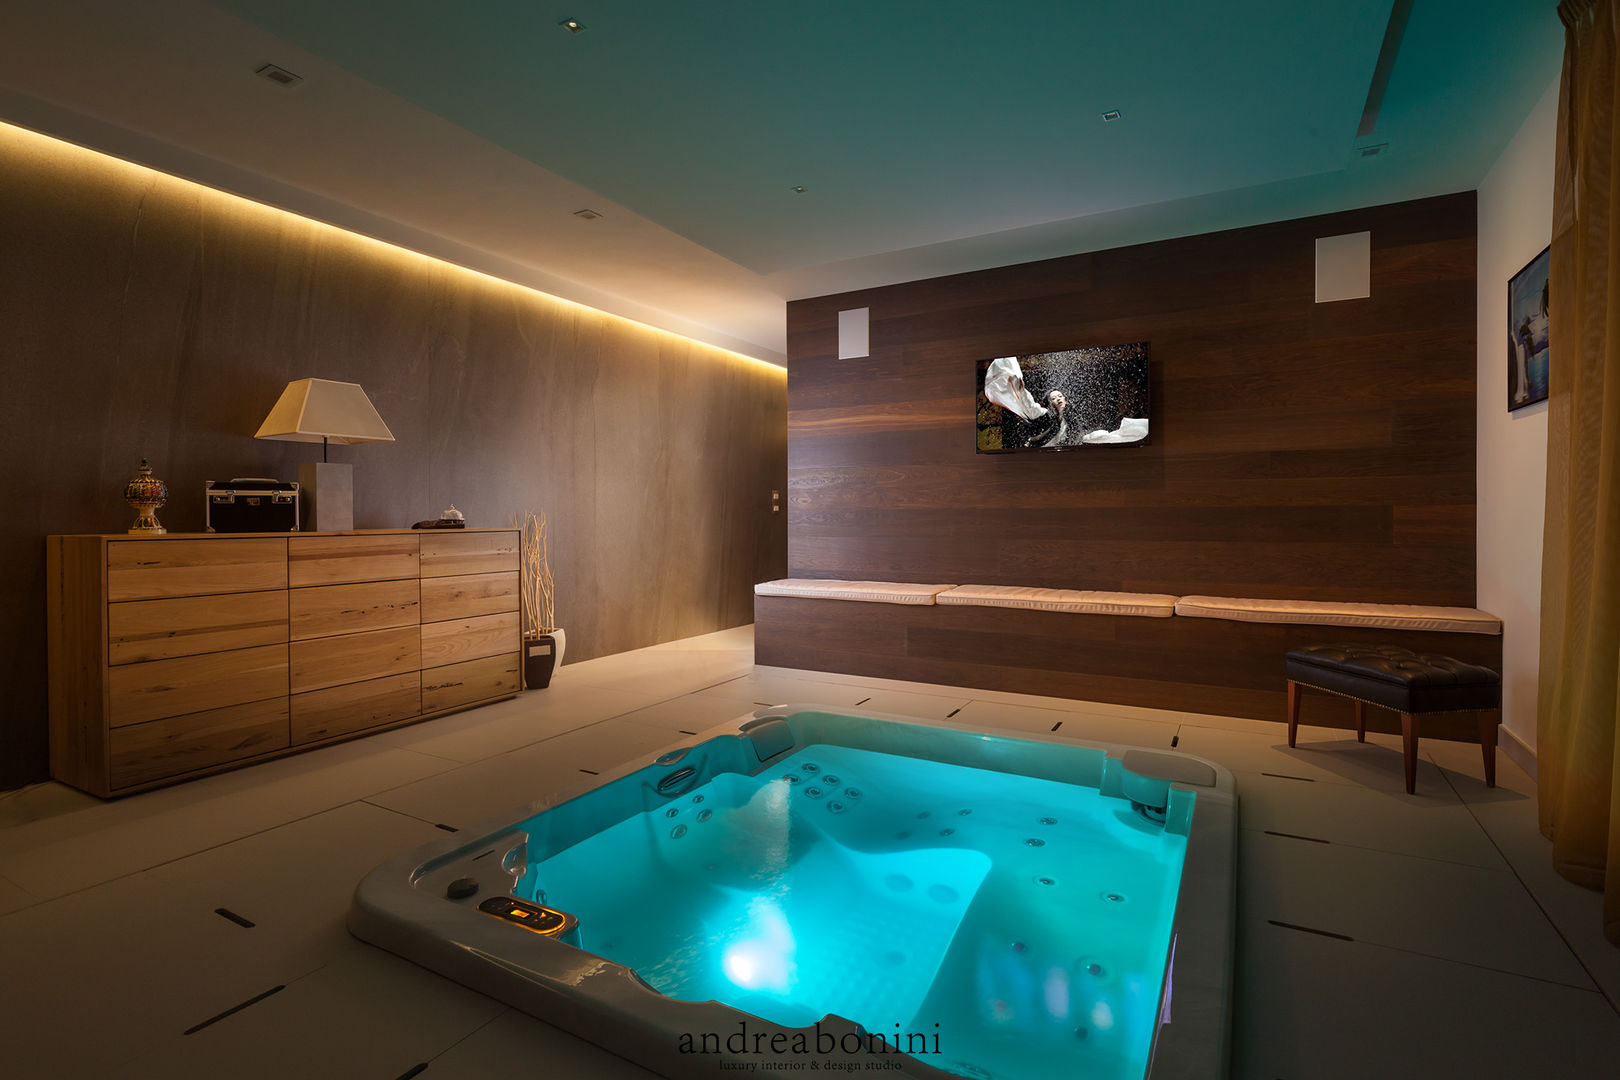 Villa on lake Garda, Andrea Bonini luxury interior & design studio Andrea Bonini luxury interior & design studio Spa modernos